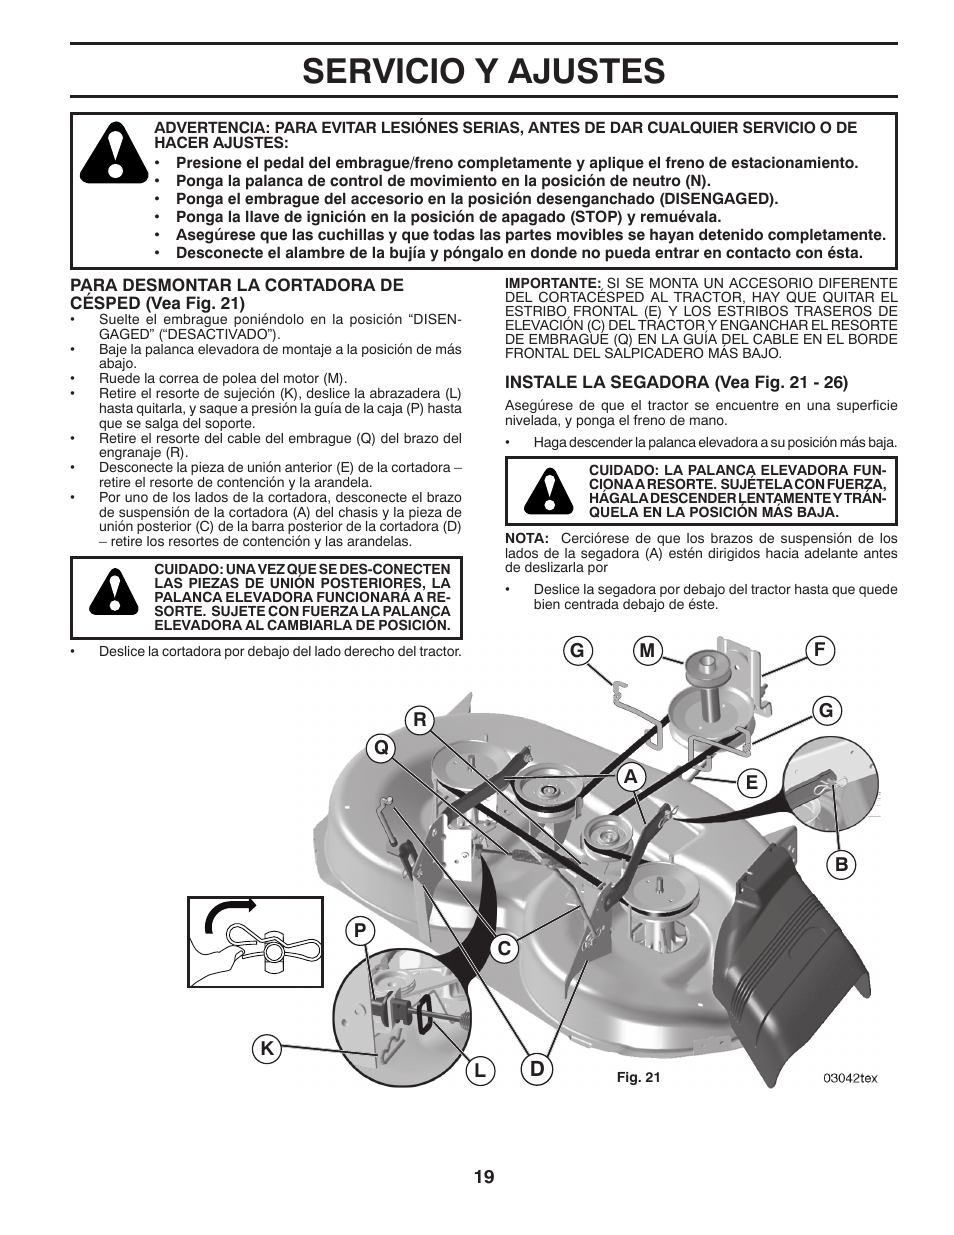 Servicio y ajustes | Poulan Pro PB195A46LT LAWN TRACTOR User Manual